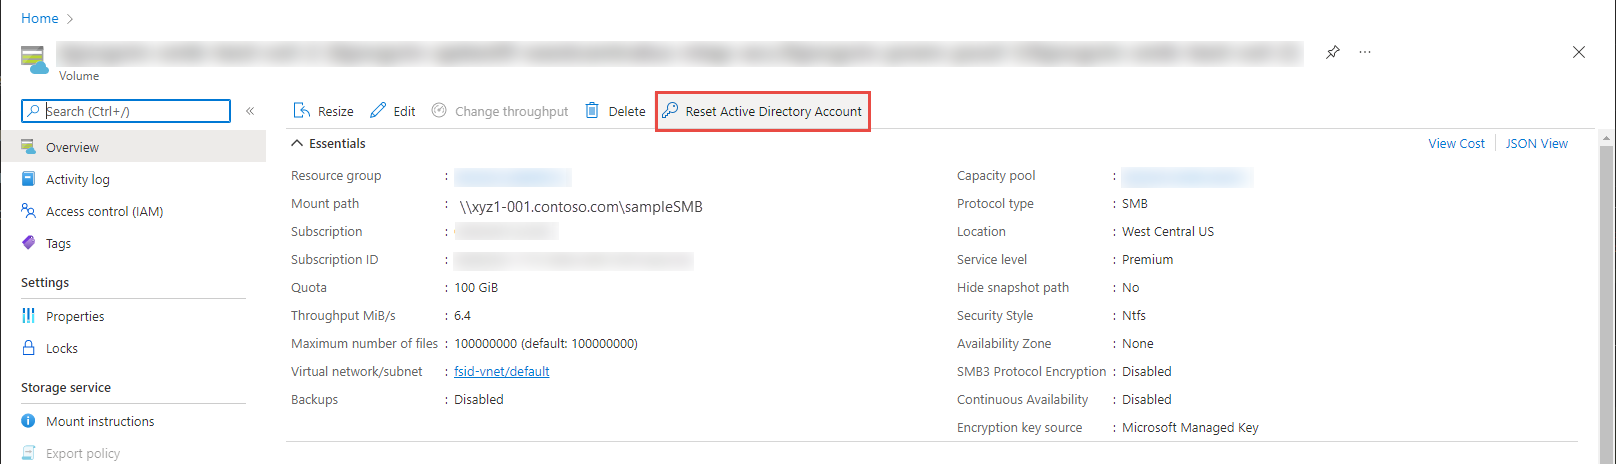 Interface de visão geral do volume Azure com o botão Reset Ative Directory Account realçado.